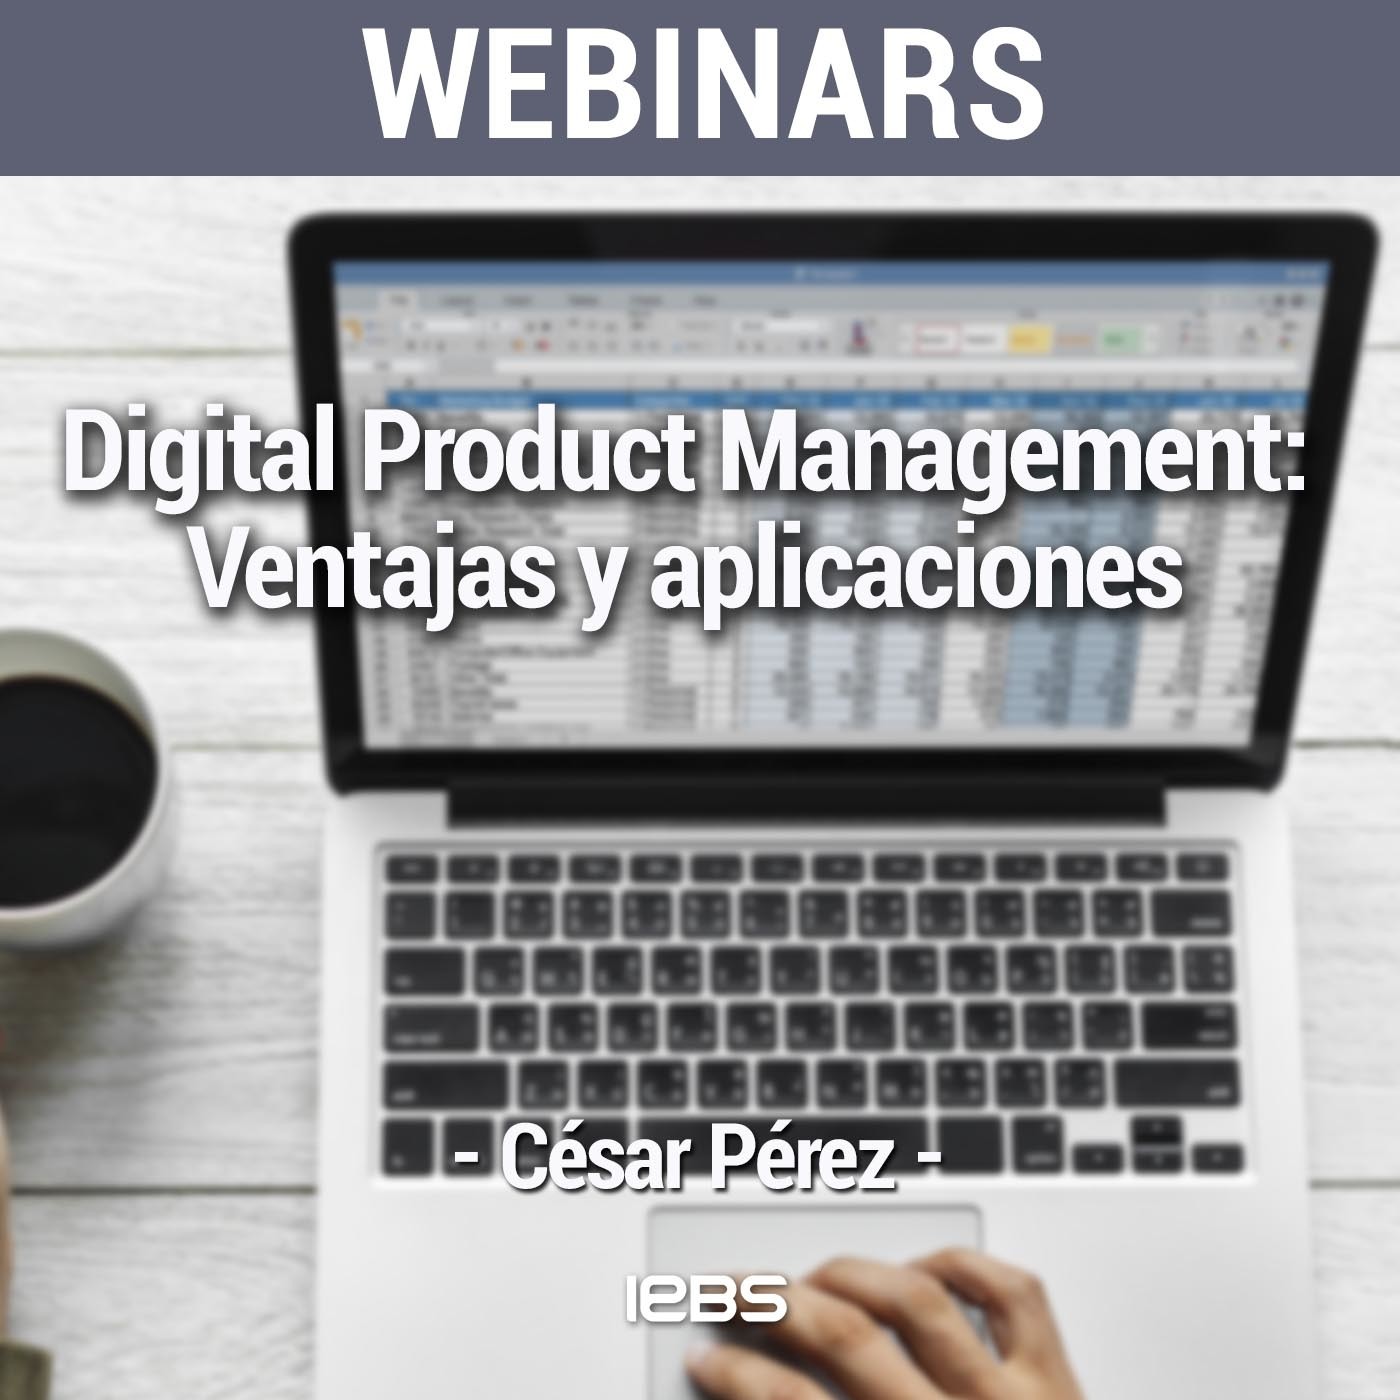 Webinar "Digital Product Management: ventajas y aplicaciones" de Akademus from IEBS